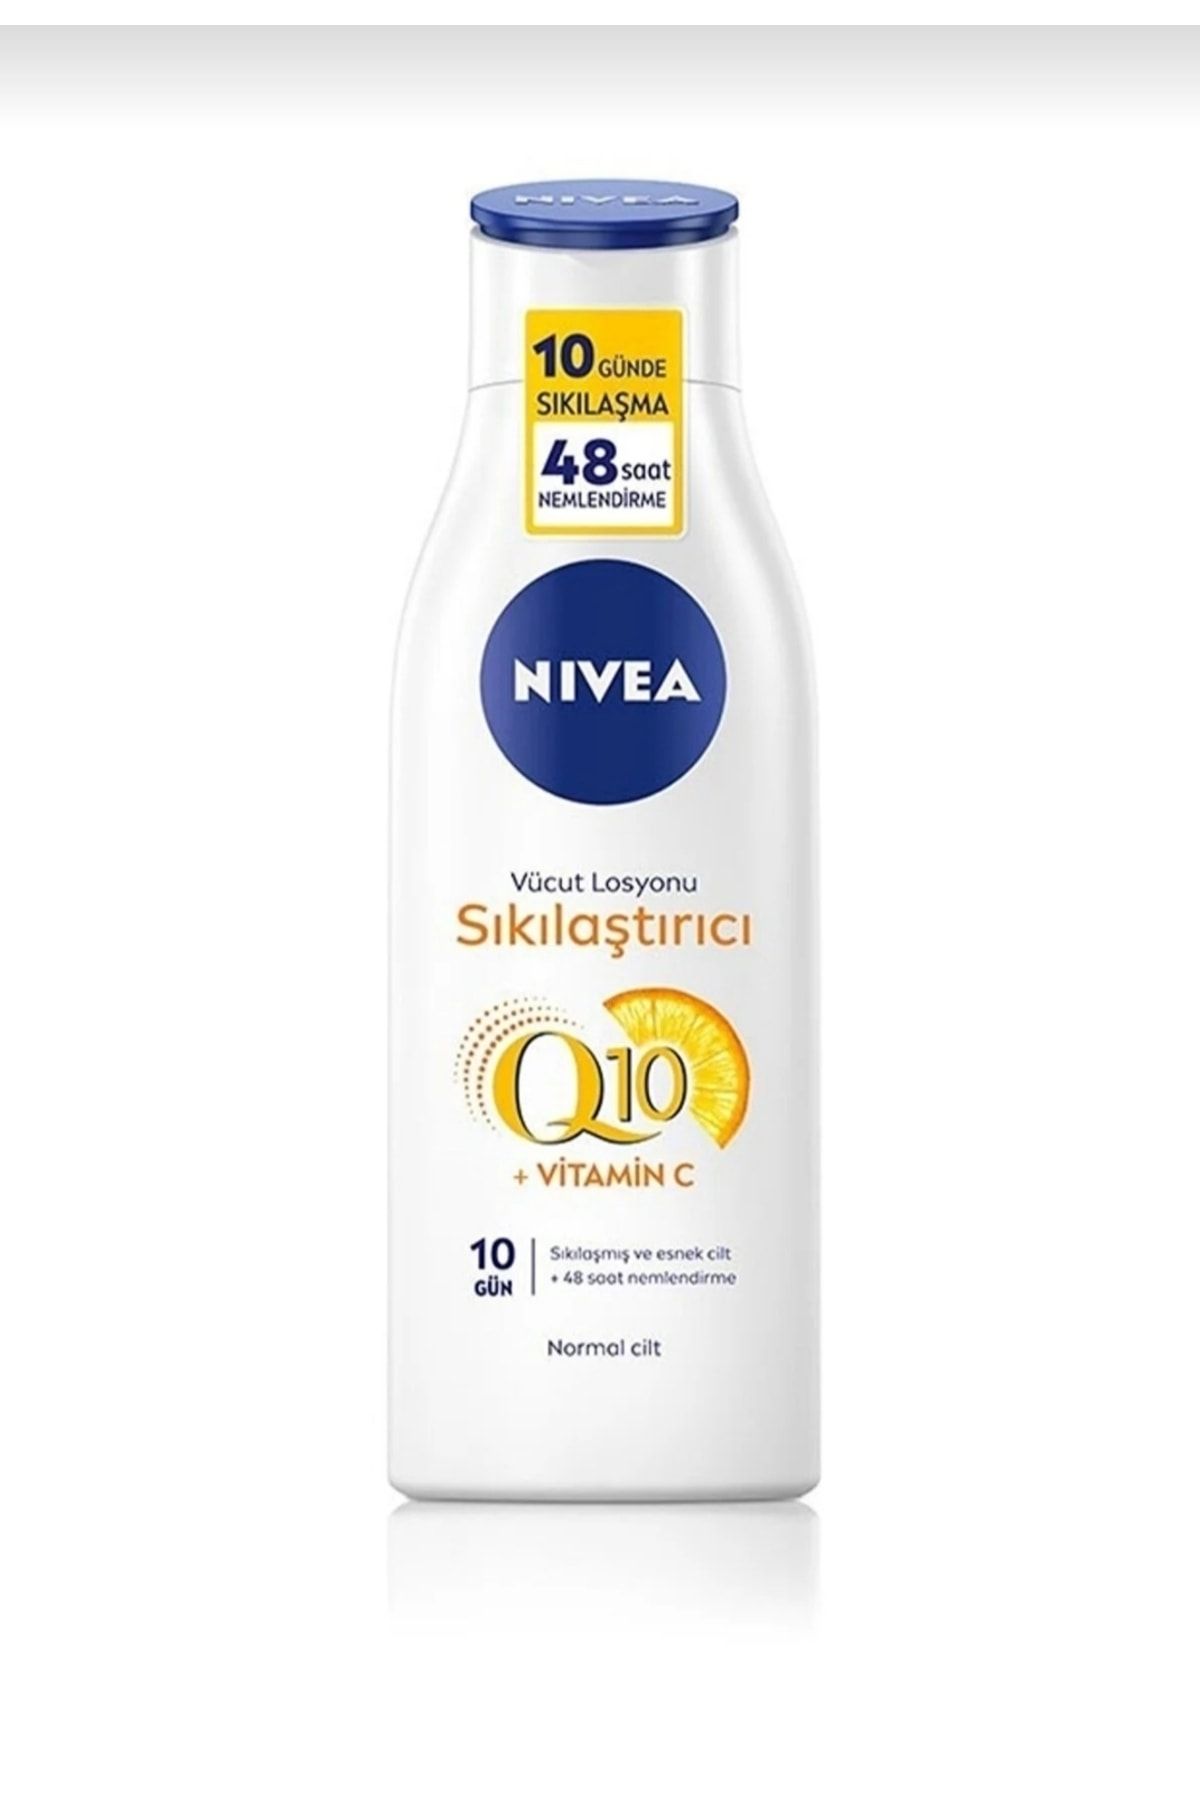 NIVEA Sıkılaştırıcı Vücut Losyonu Q10 Vitamin C 250ml,48 Saat Nemlendirme,10 Günde Sıkılaş